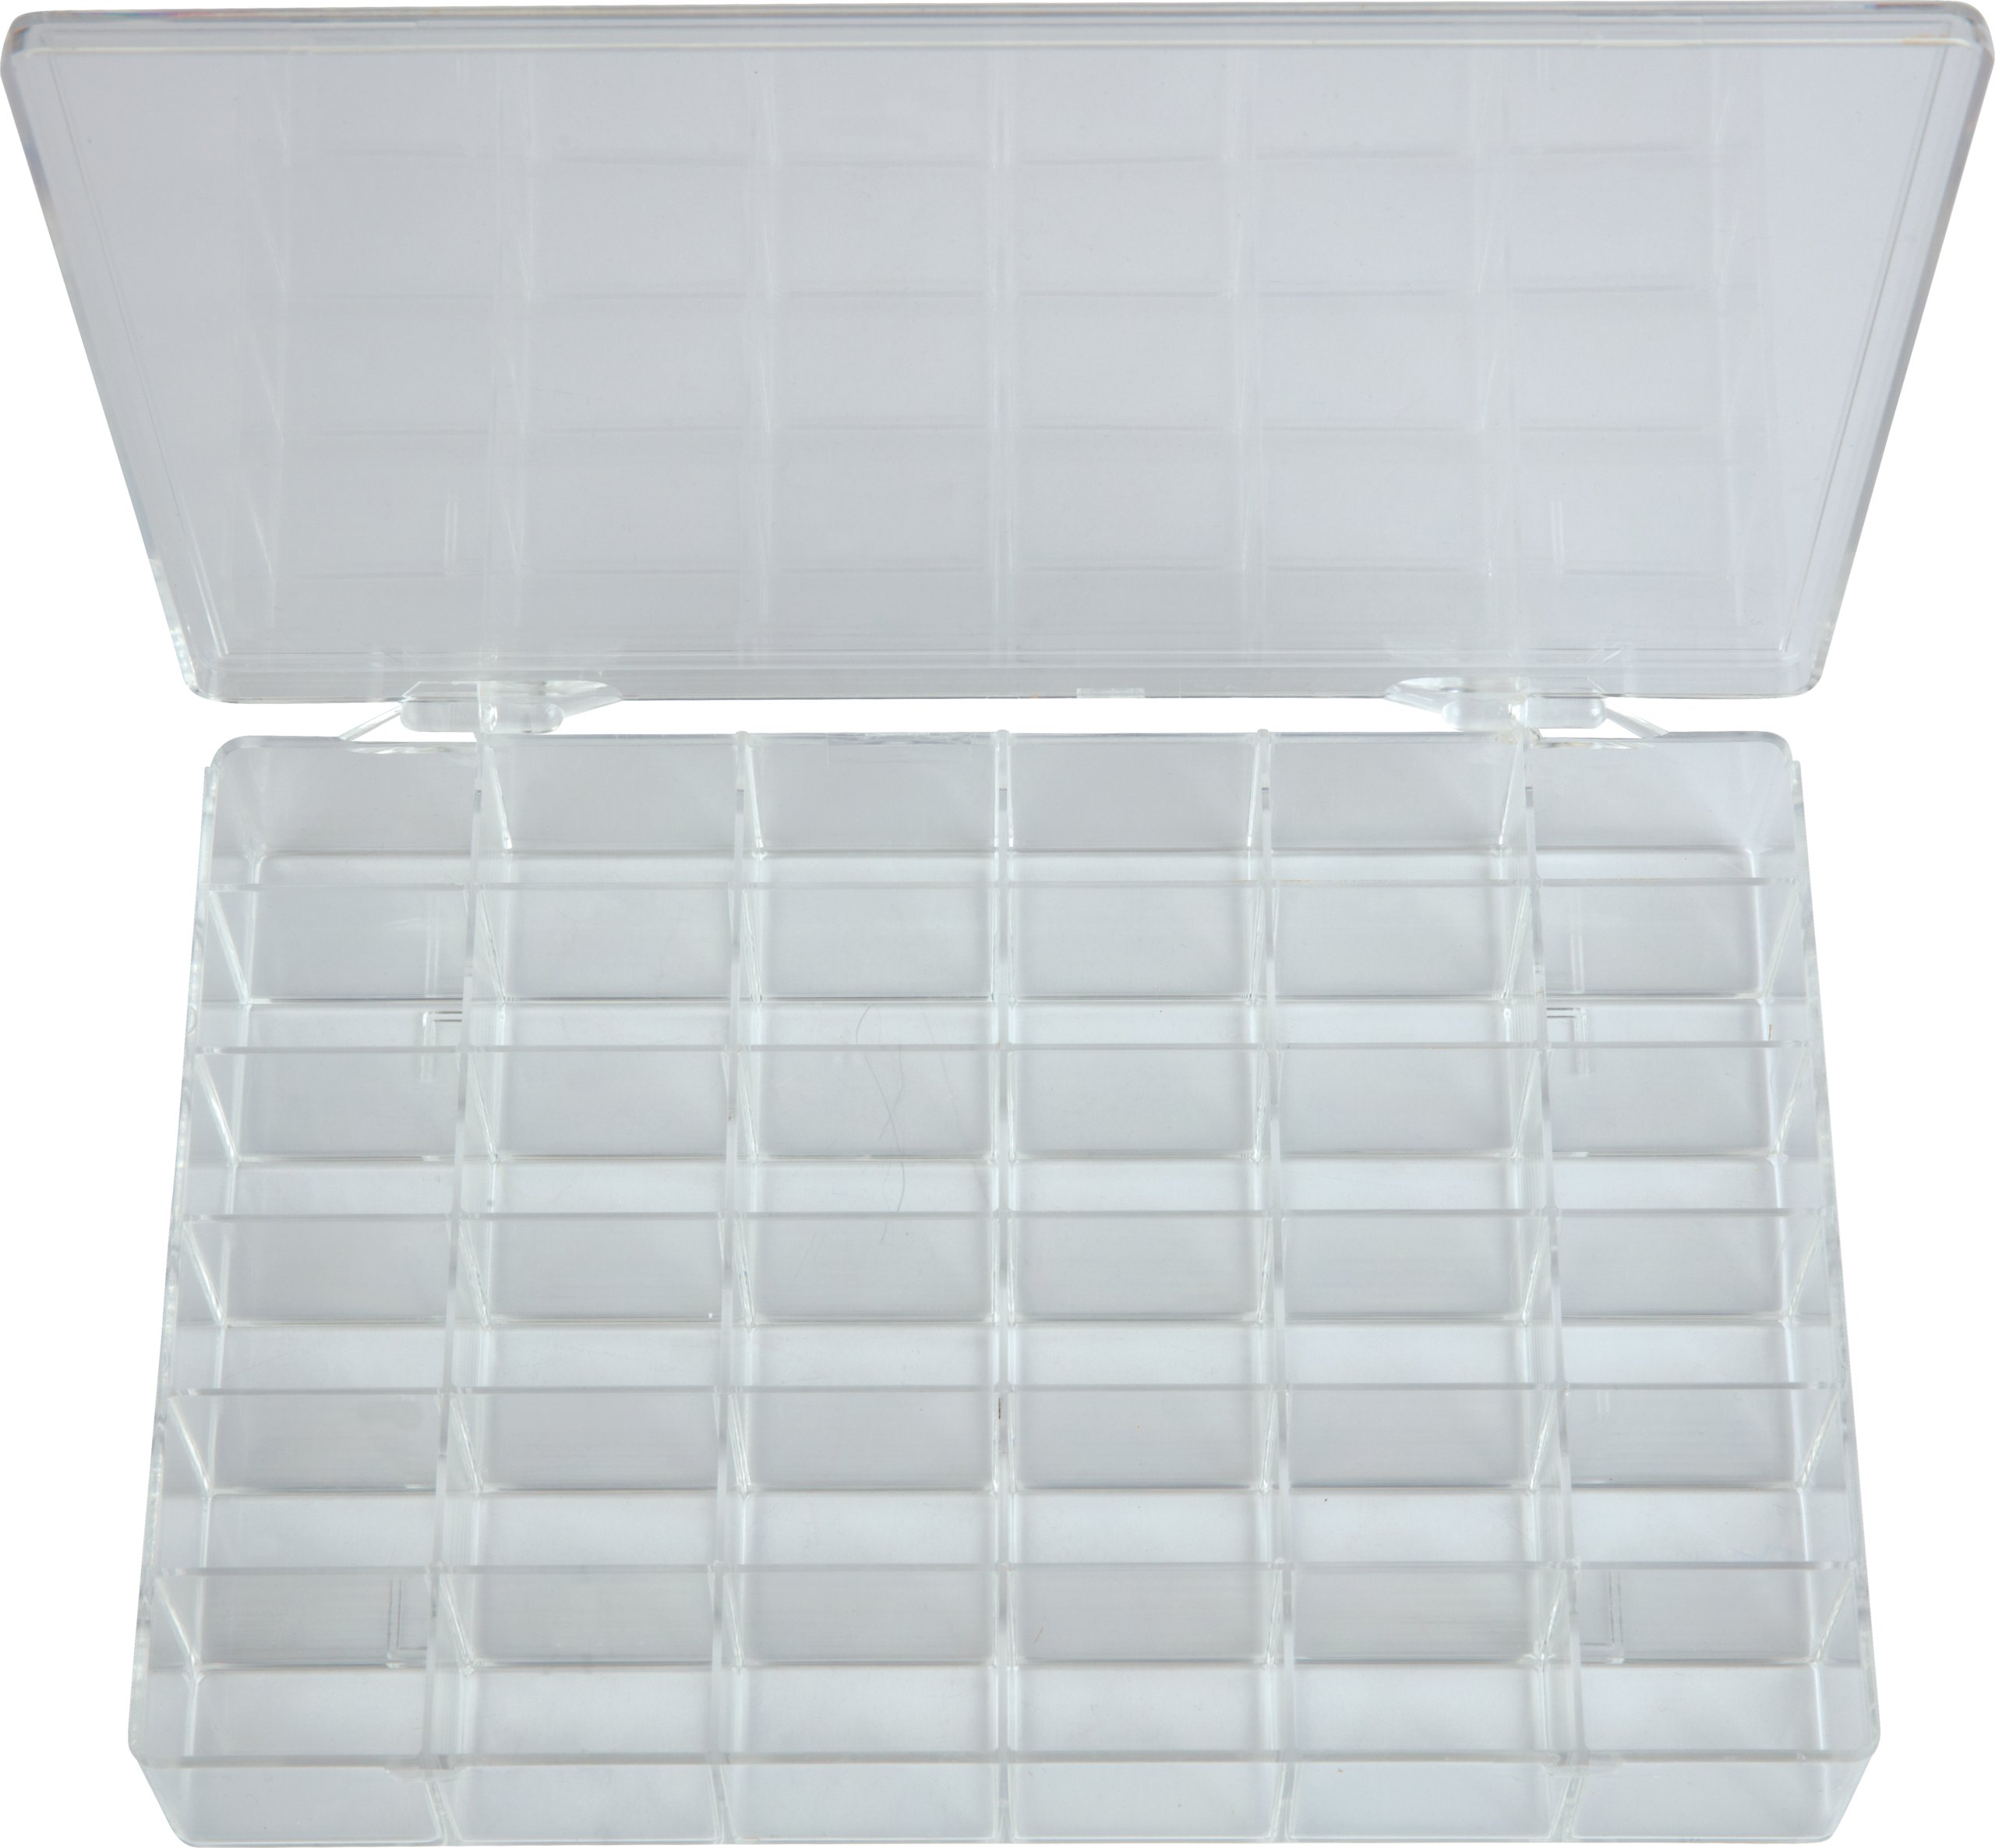 Plastic 36 Compartment Organizer